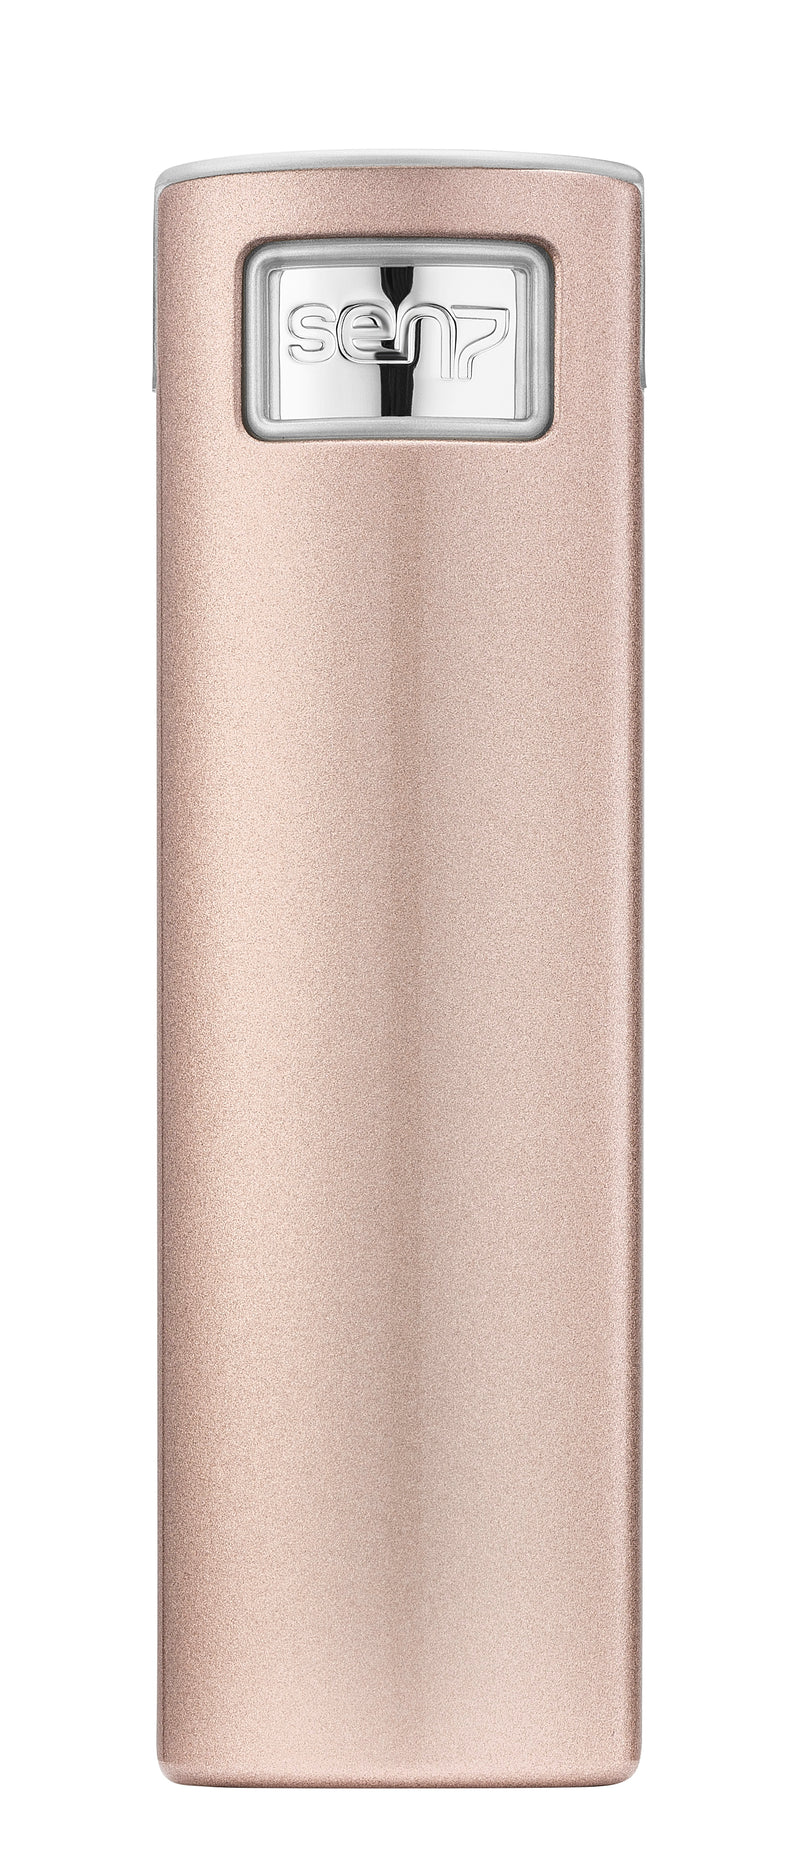 Taschenzerstäuber Style Gloss rosé